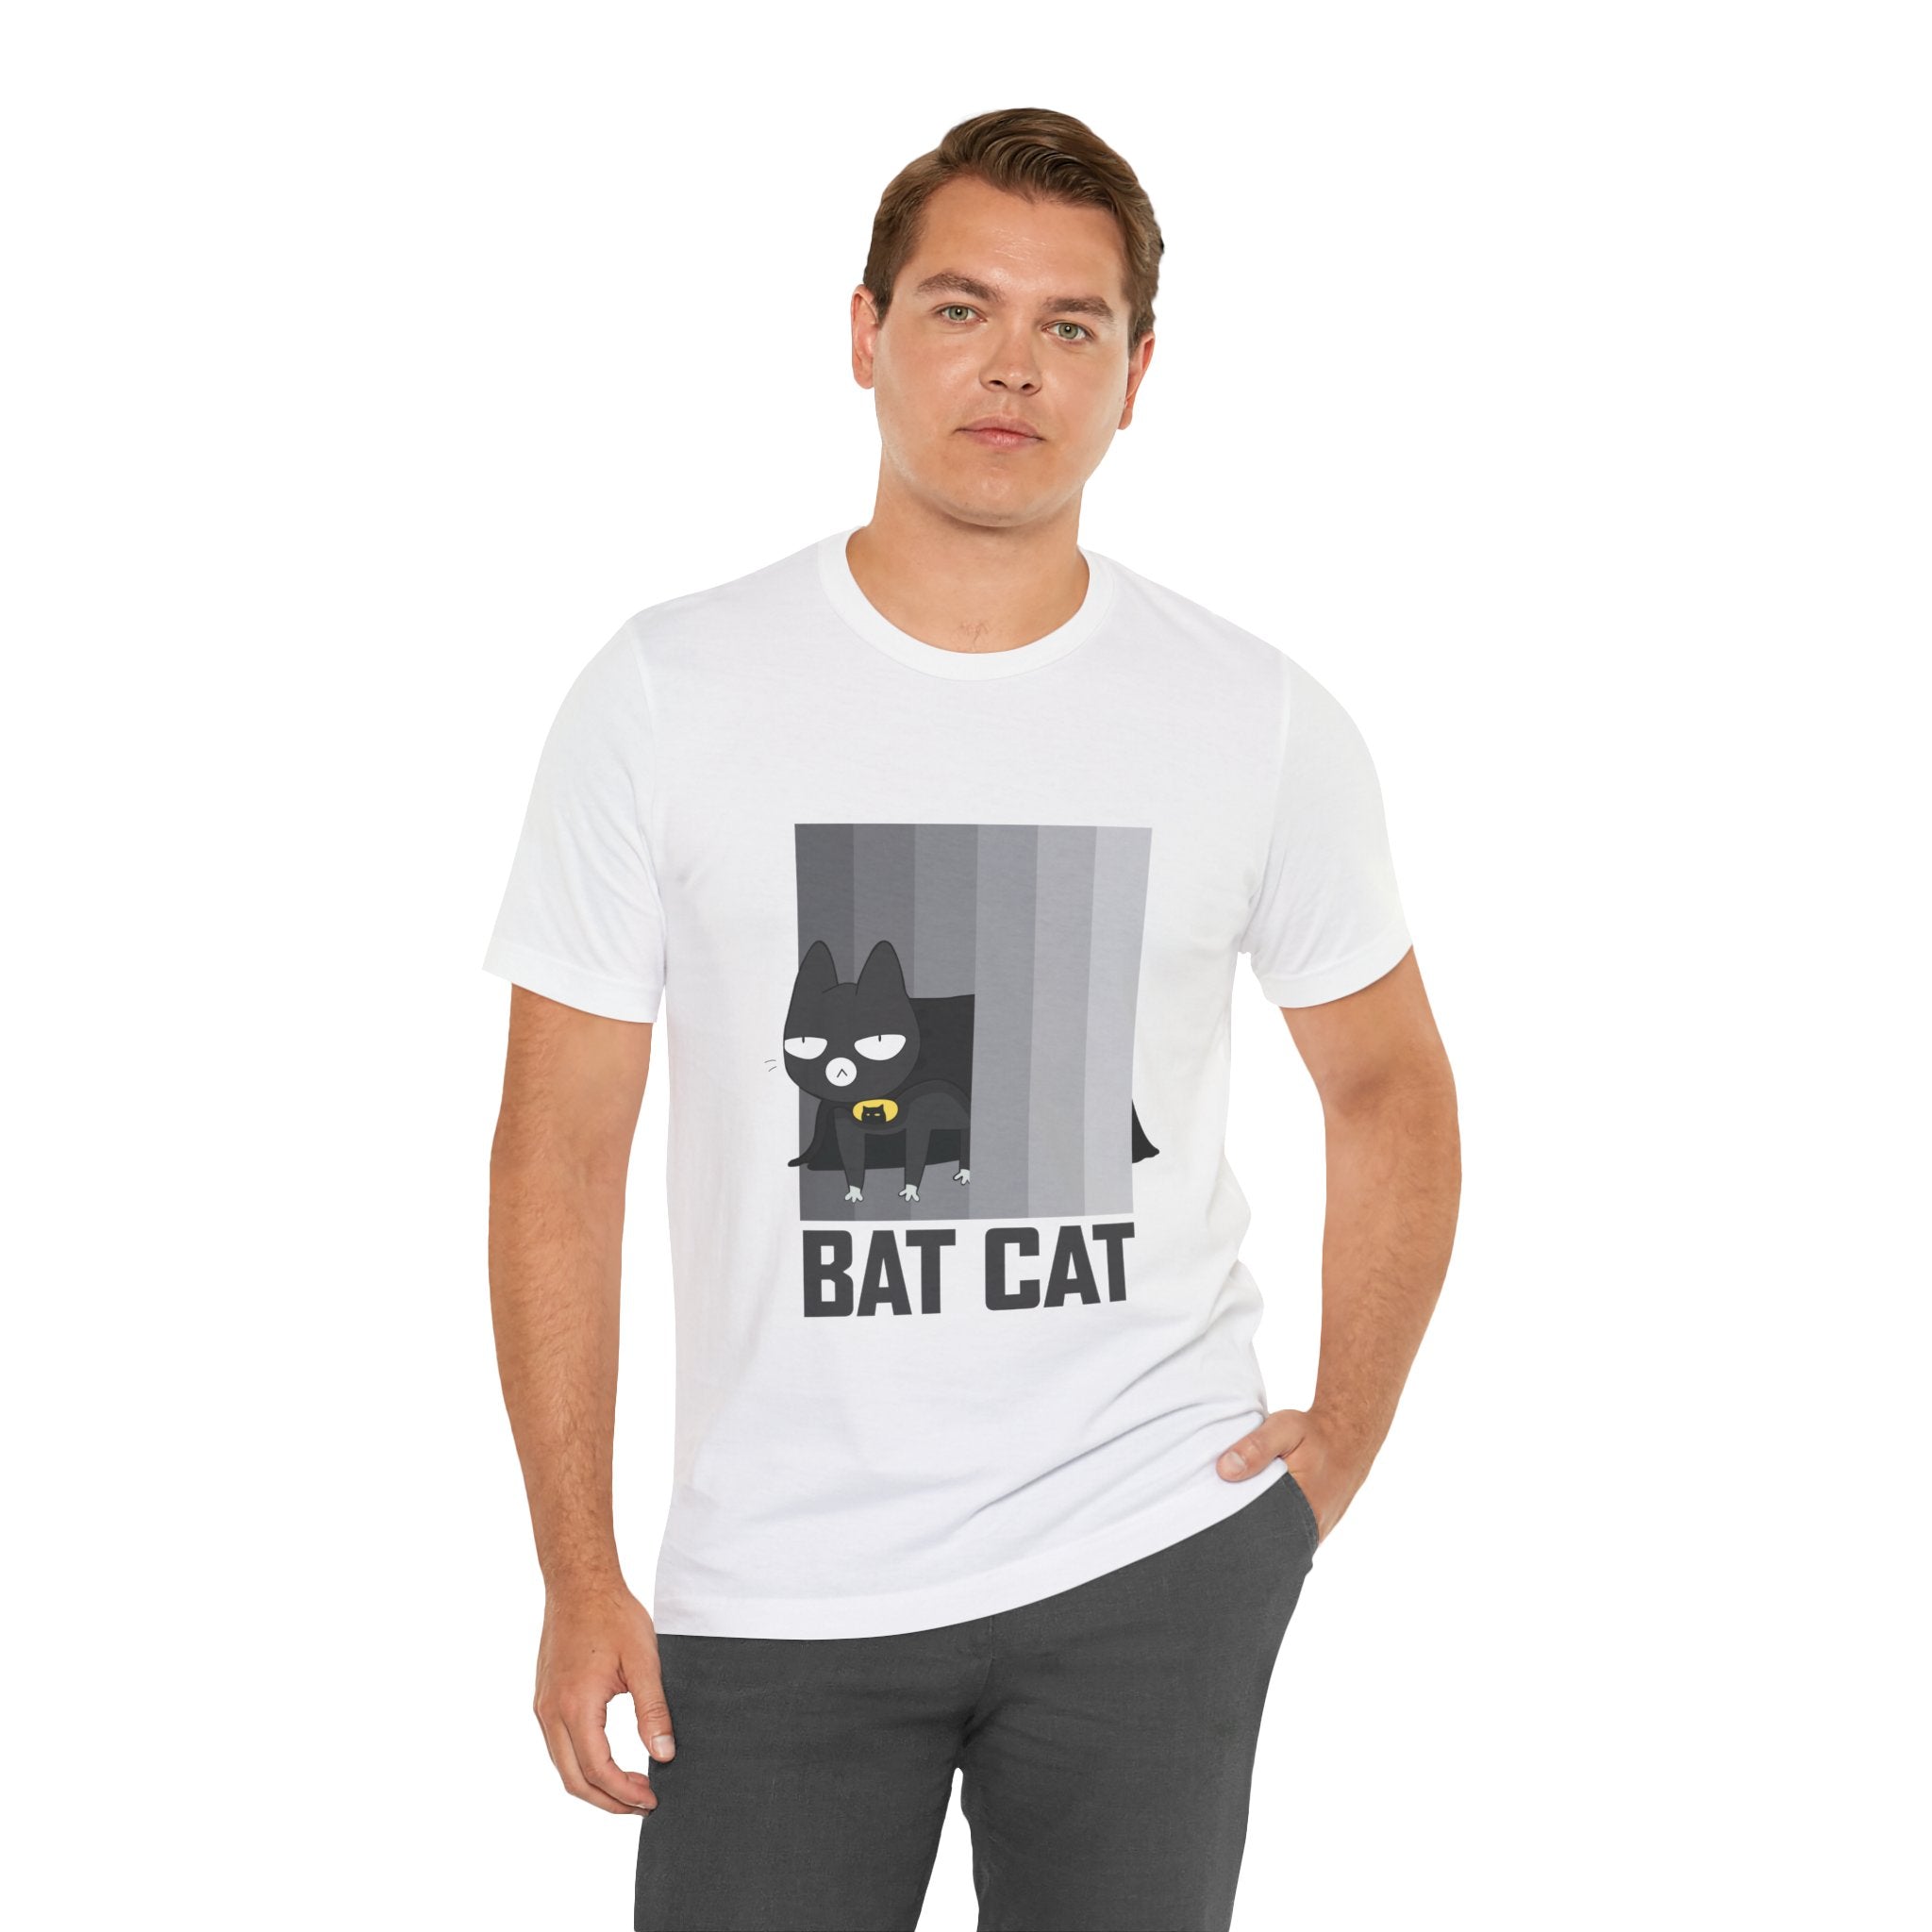 Man standing in a studio, wearing a BATCAT T-Shirt with a "Batcat" cartoon design.